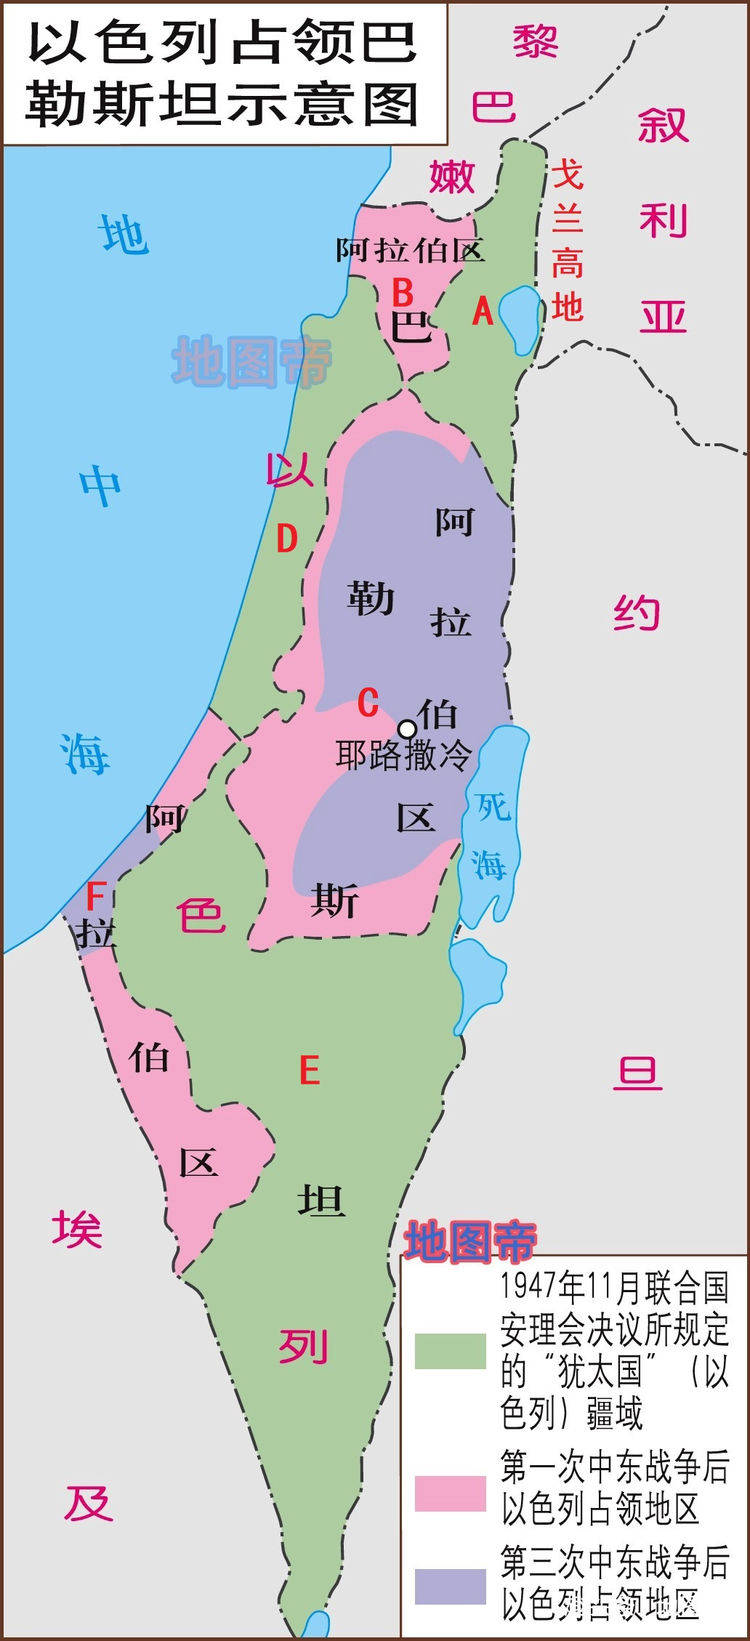 犹太人立国之战,以色列实际控制土地增加了多少?